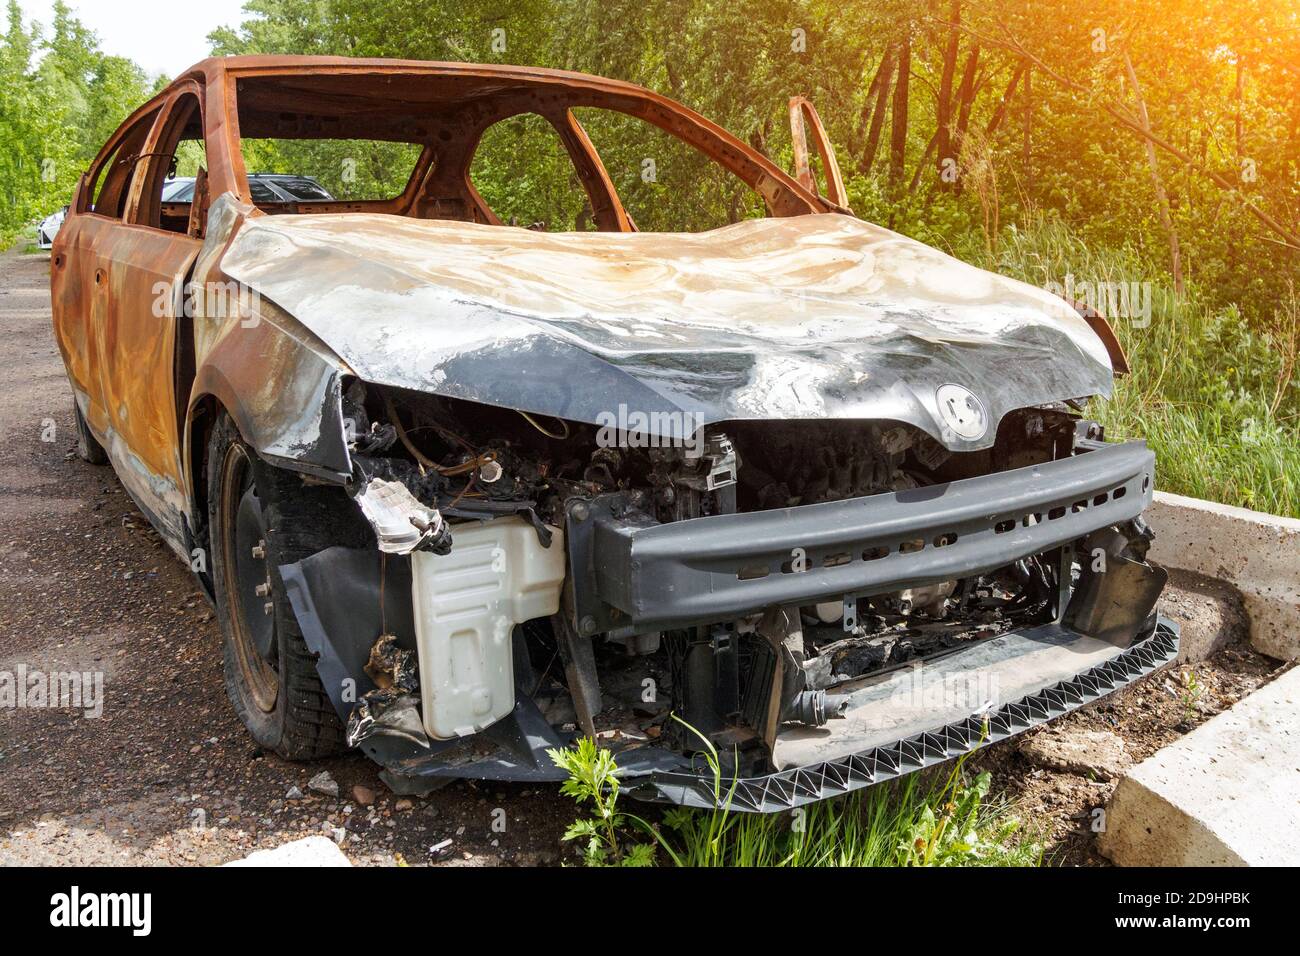 Vorderansicht eines verbrannten rostigen Pkw am Sommertag, fehlender Stoßfänger, eine zerknitterte Motorhaube. Stockfoto